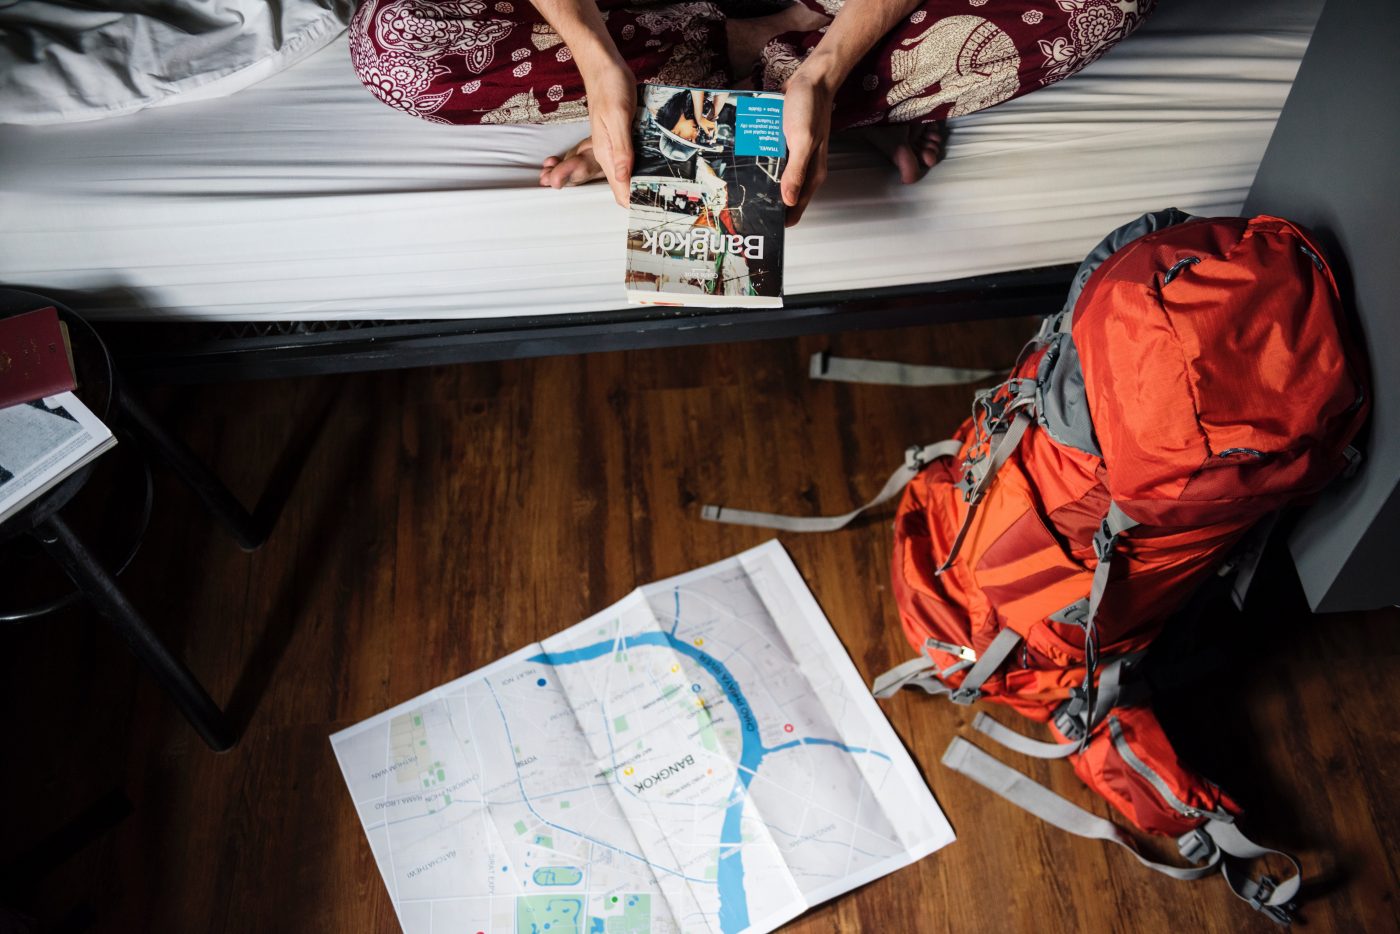 Workaway: Hostel backpacker